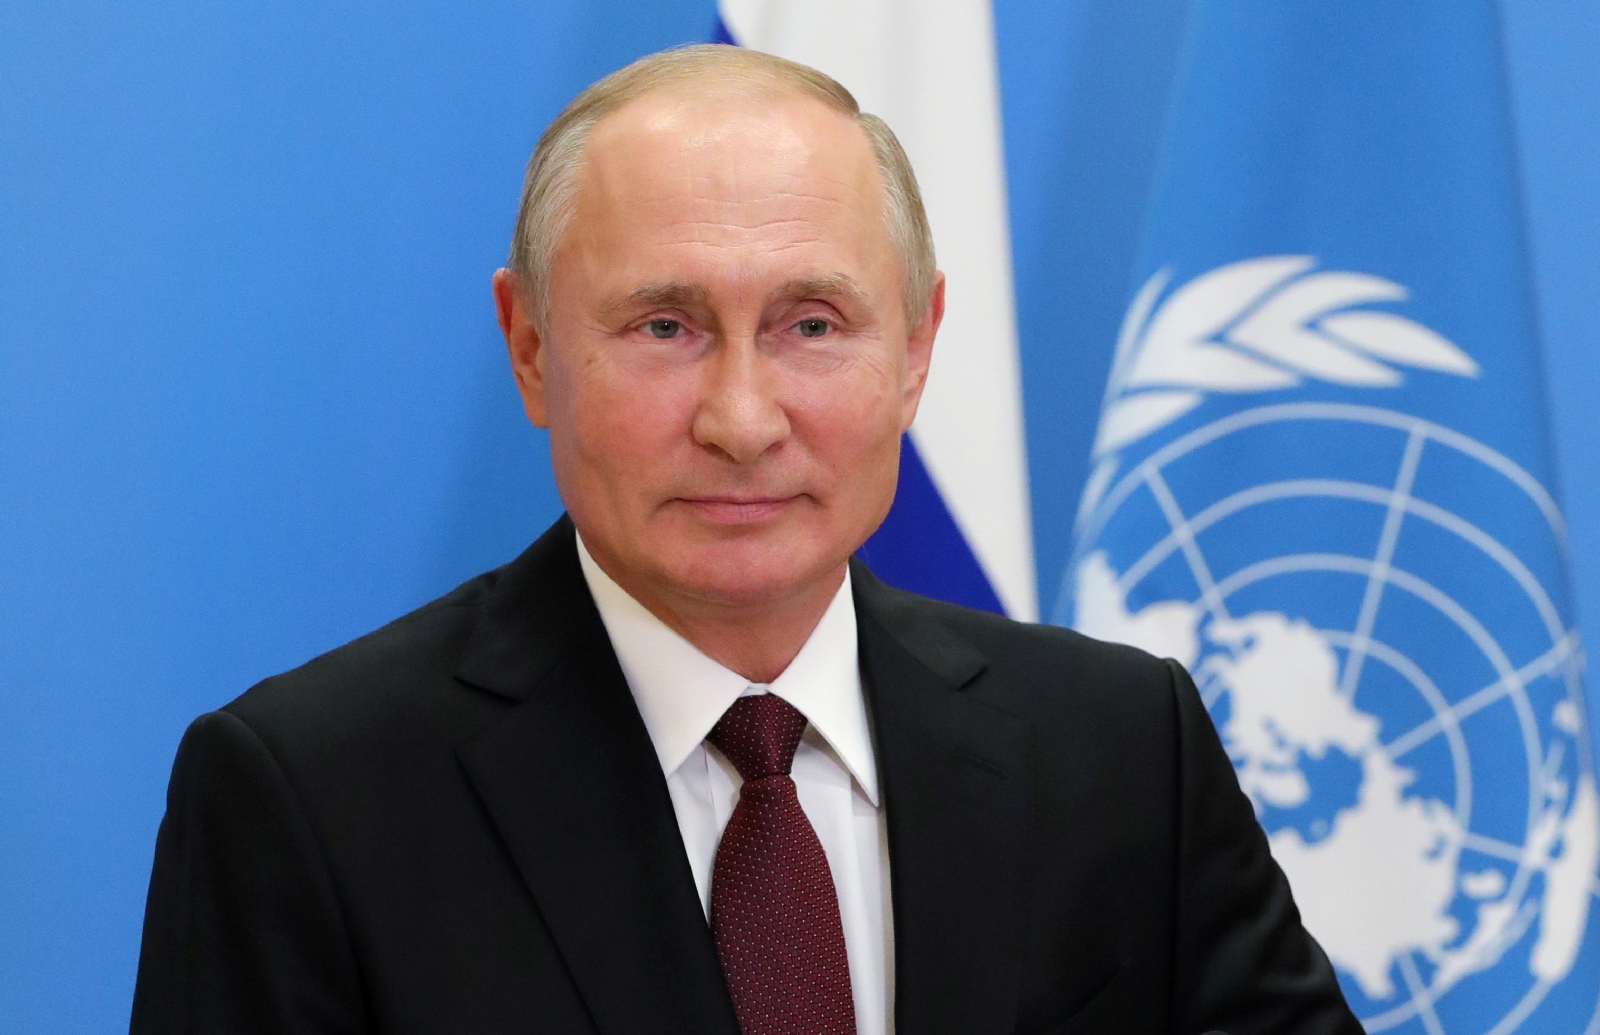 Vladimir Putin recibirá vacuna anticovid este martes